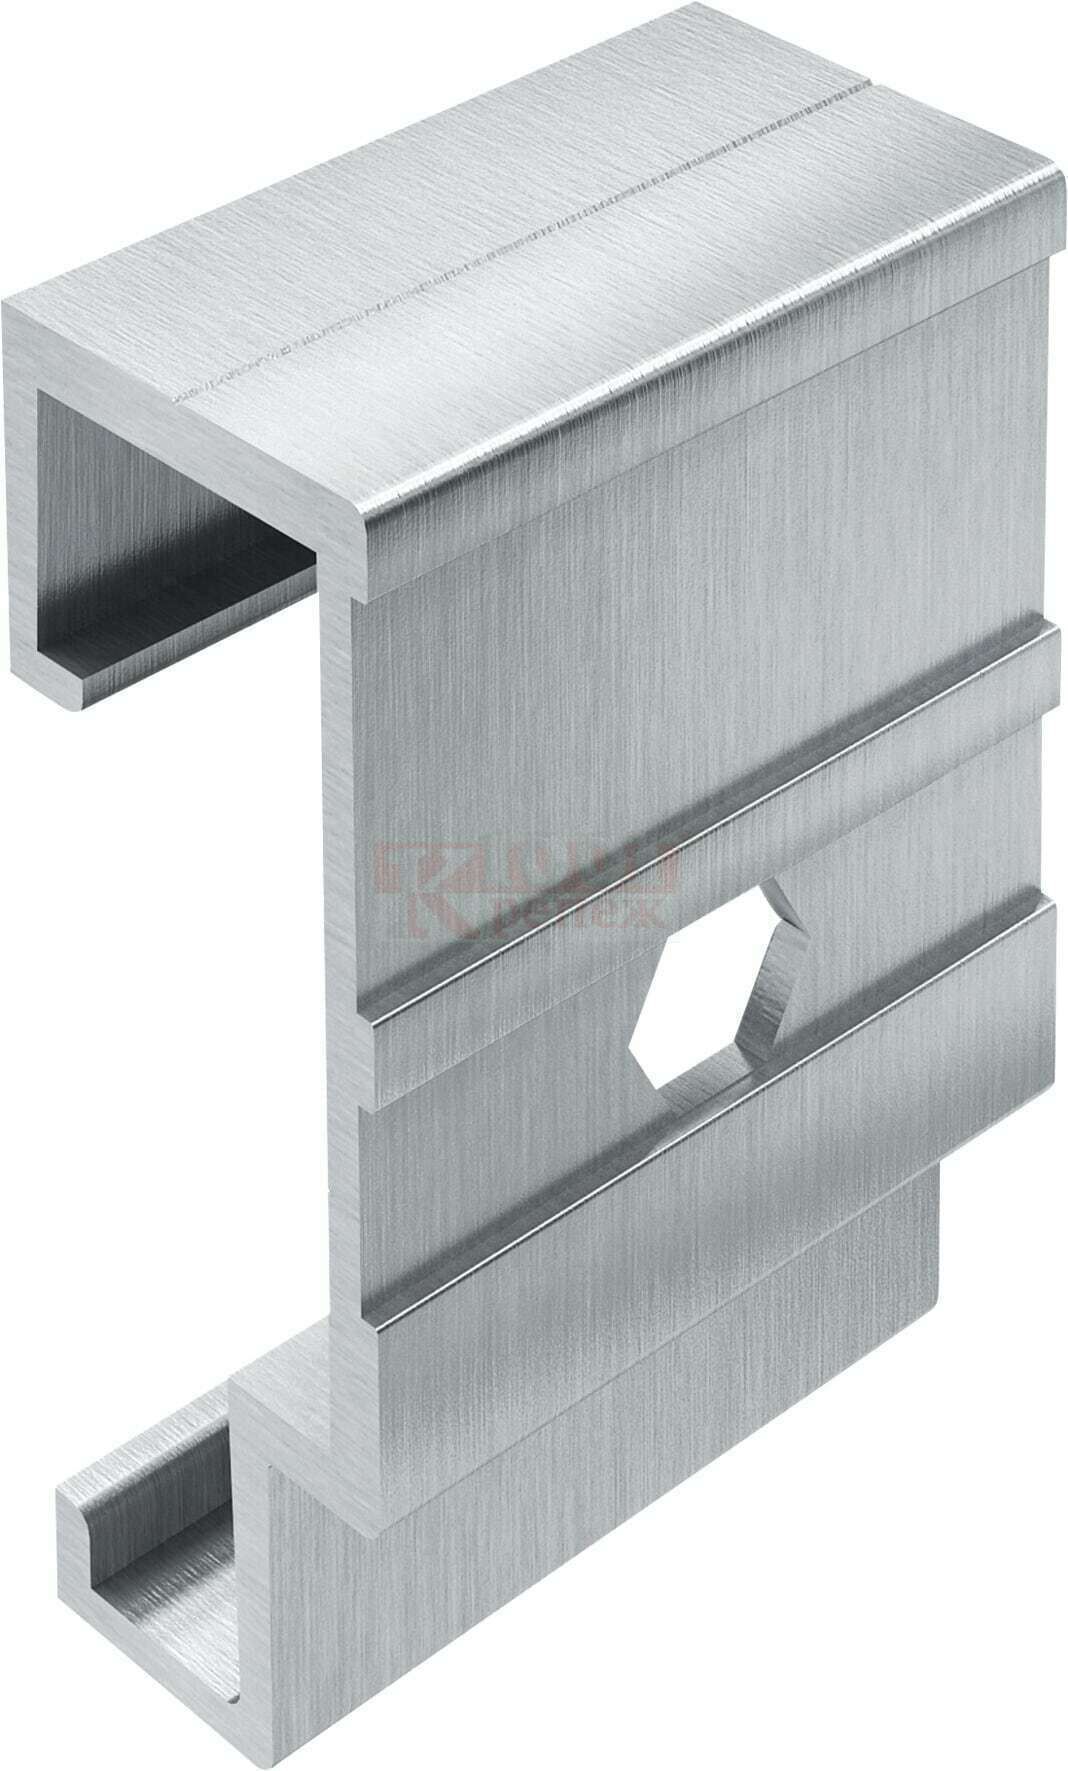 MFT-H 100/40 K Аграфа HILTI для фасадных систем под анкеры с подрезкой алюминий, 23x60x40 мм